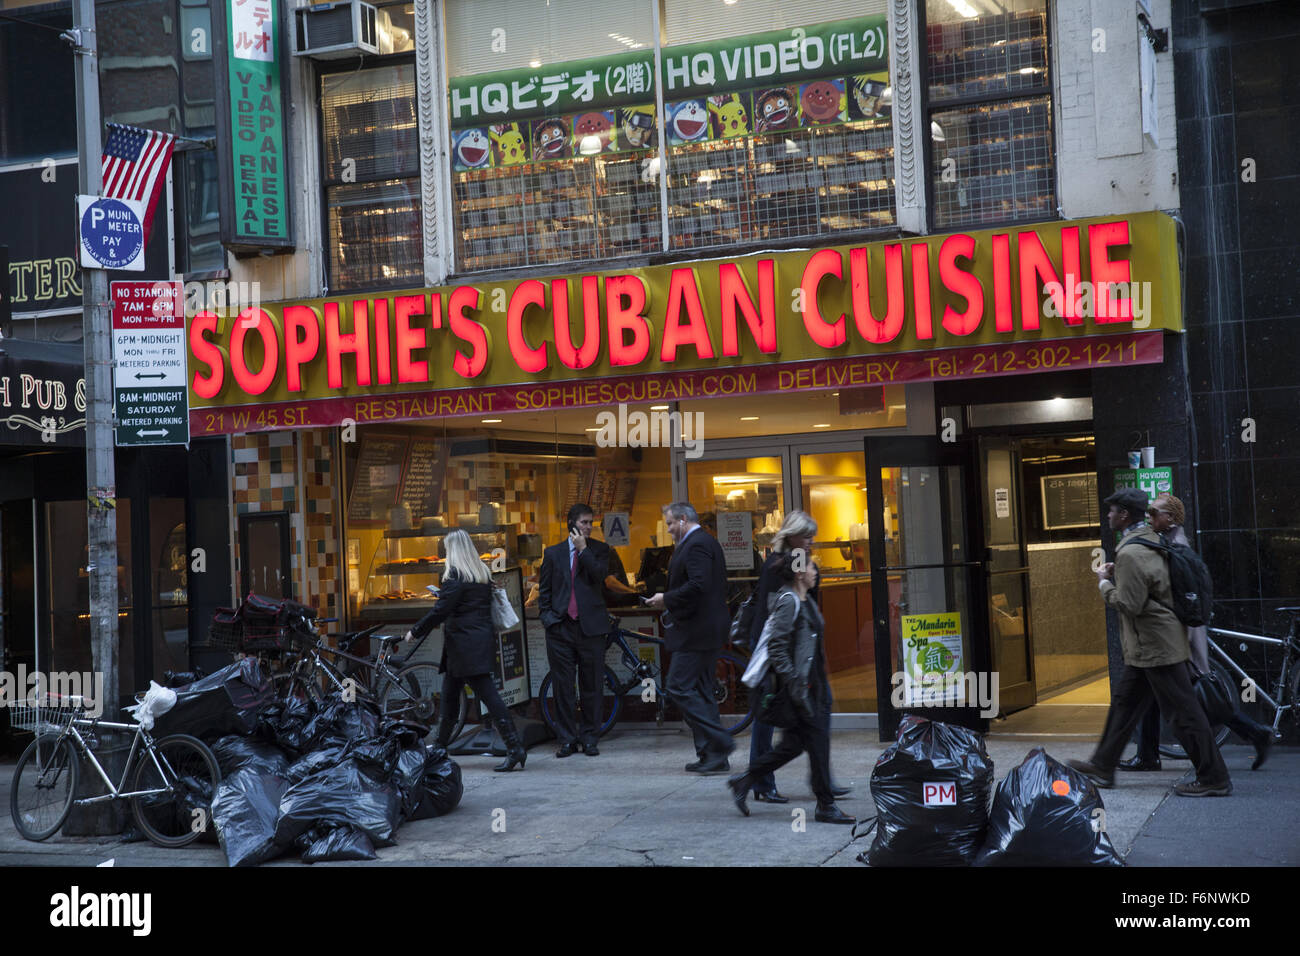 Trottoir en face de Sophie Cuisine cubaine sur W. 45th Street à Manhattan, New York. Banque D'Images